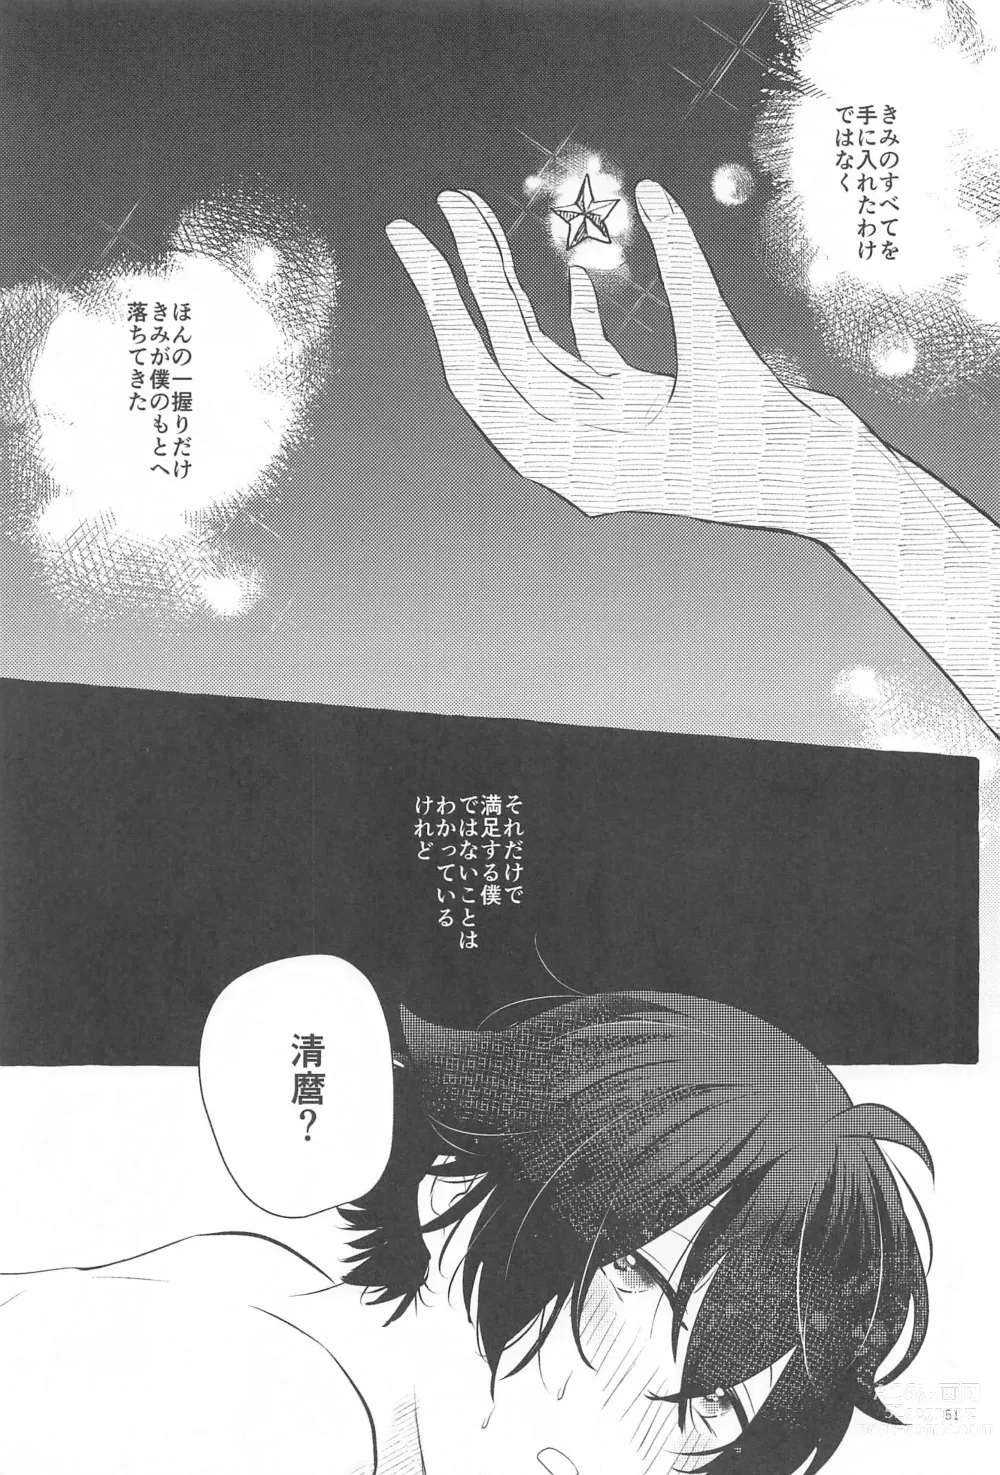 Page 50 of doujinshi Kanete kara no Setsubou de